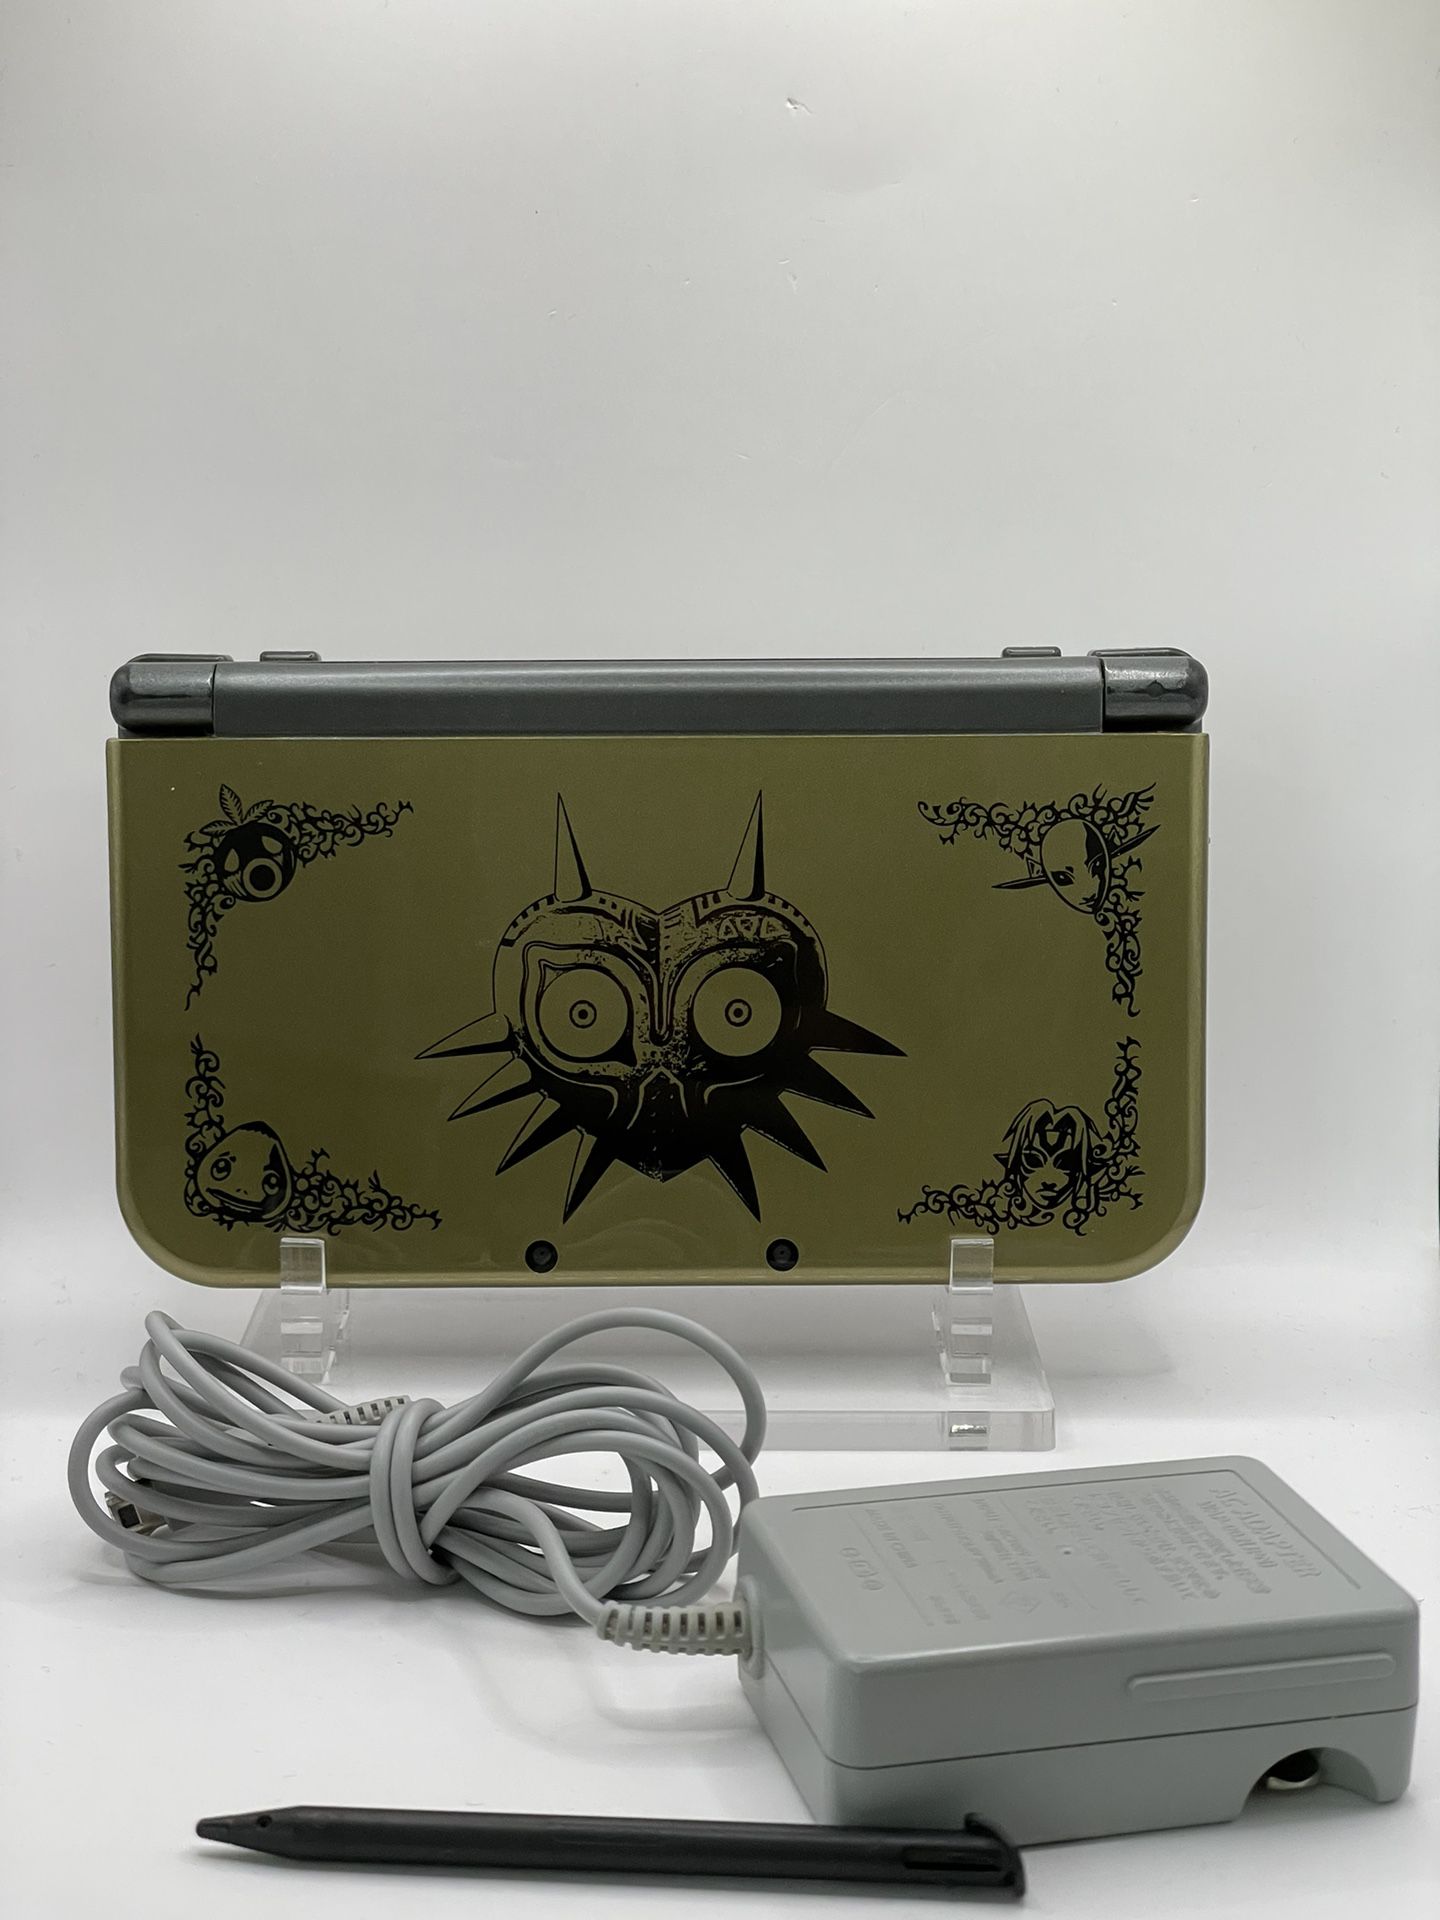 Nintendo 3DS XL Legend of Zelda Majora's Mask Limited Edition 